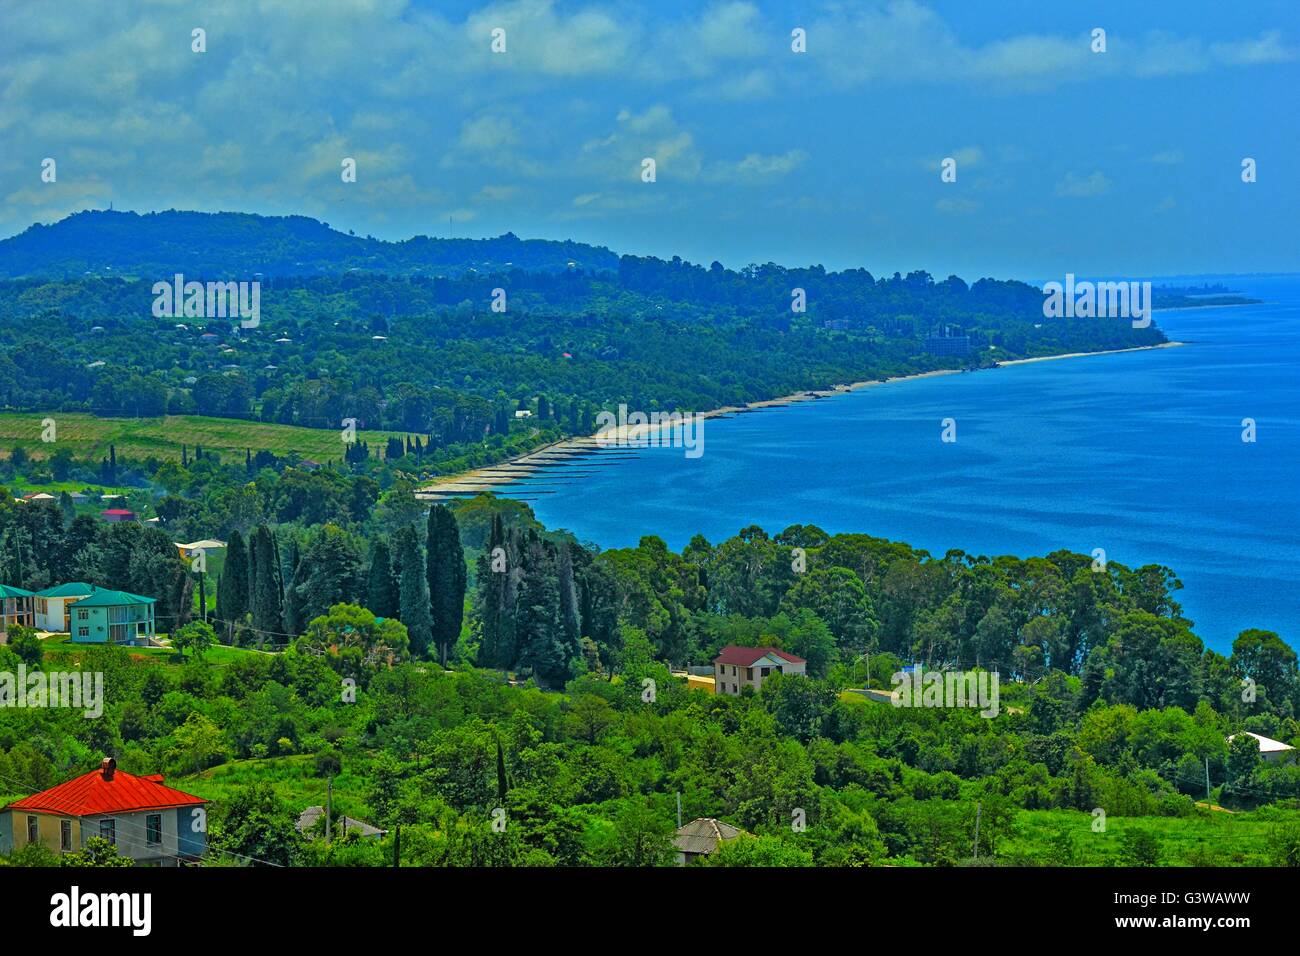 Panorama della costa del mare con piccola città balneare ed i contrafforti della dorsale montagnosa coperta da una fitta vegetazione Foto Stock